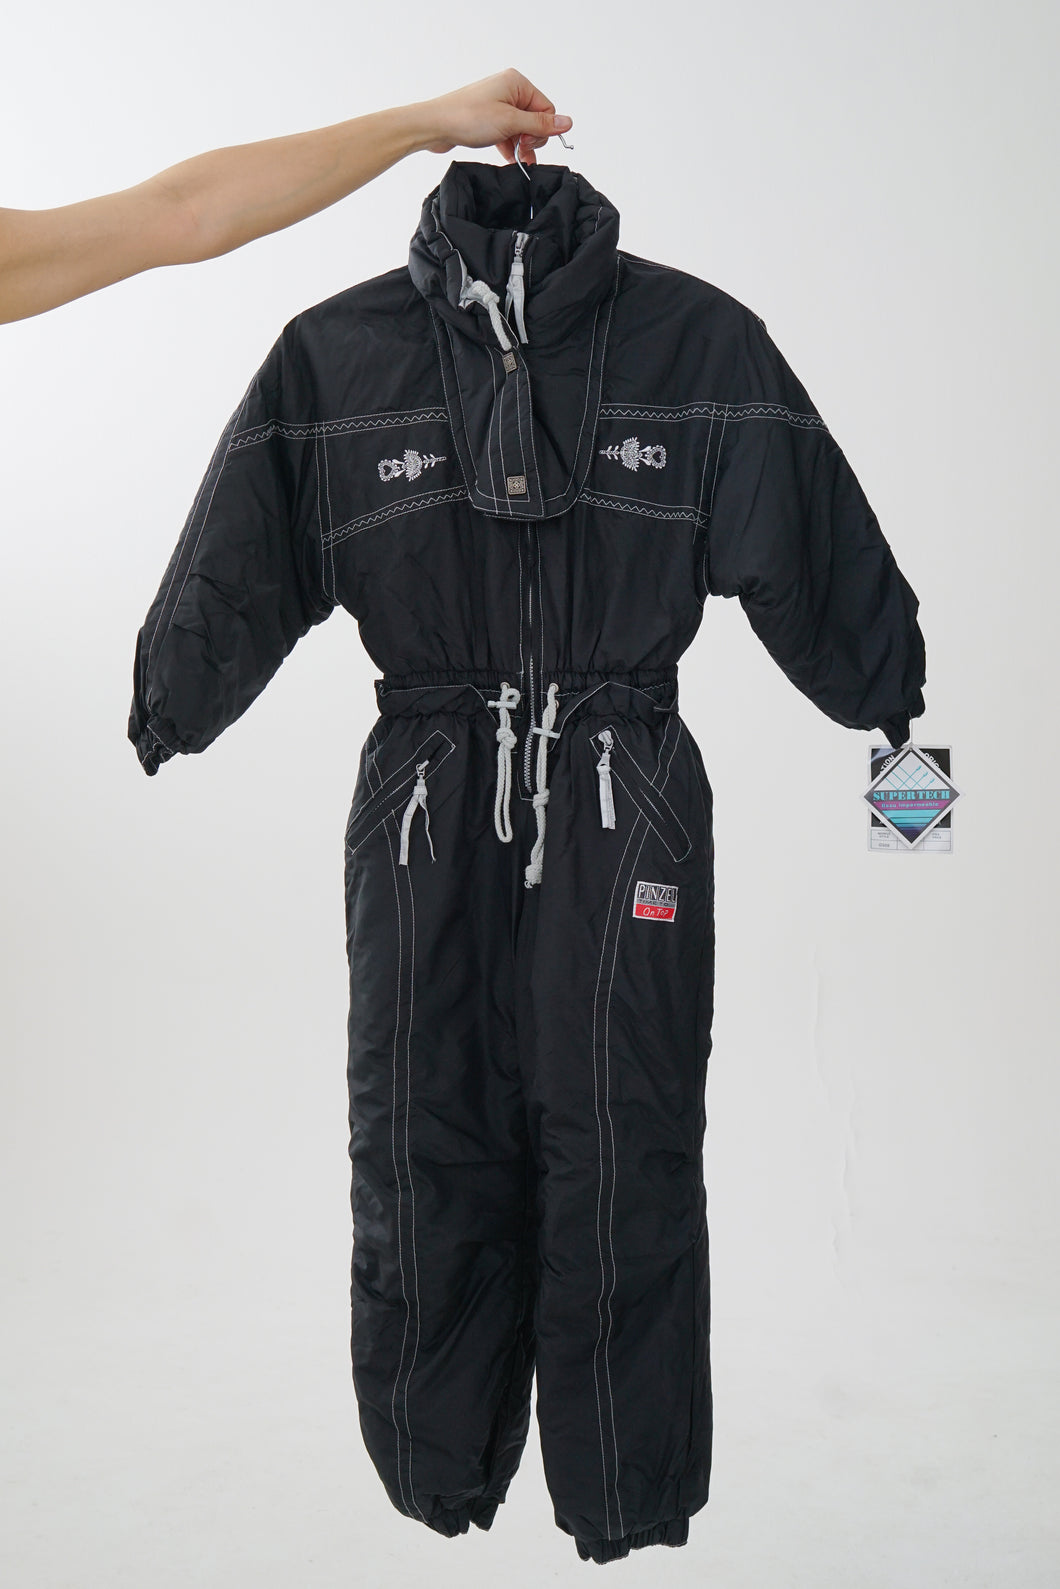 One piece Ski Fashion, snow suit pour enfant noir et blanc taille S (10-12ans)